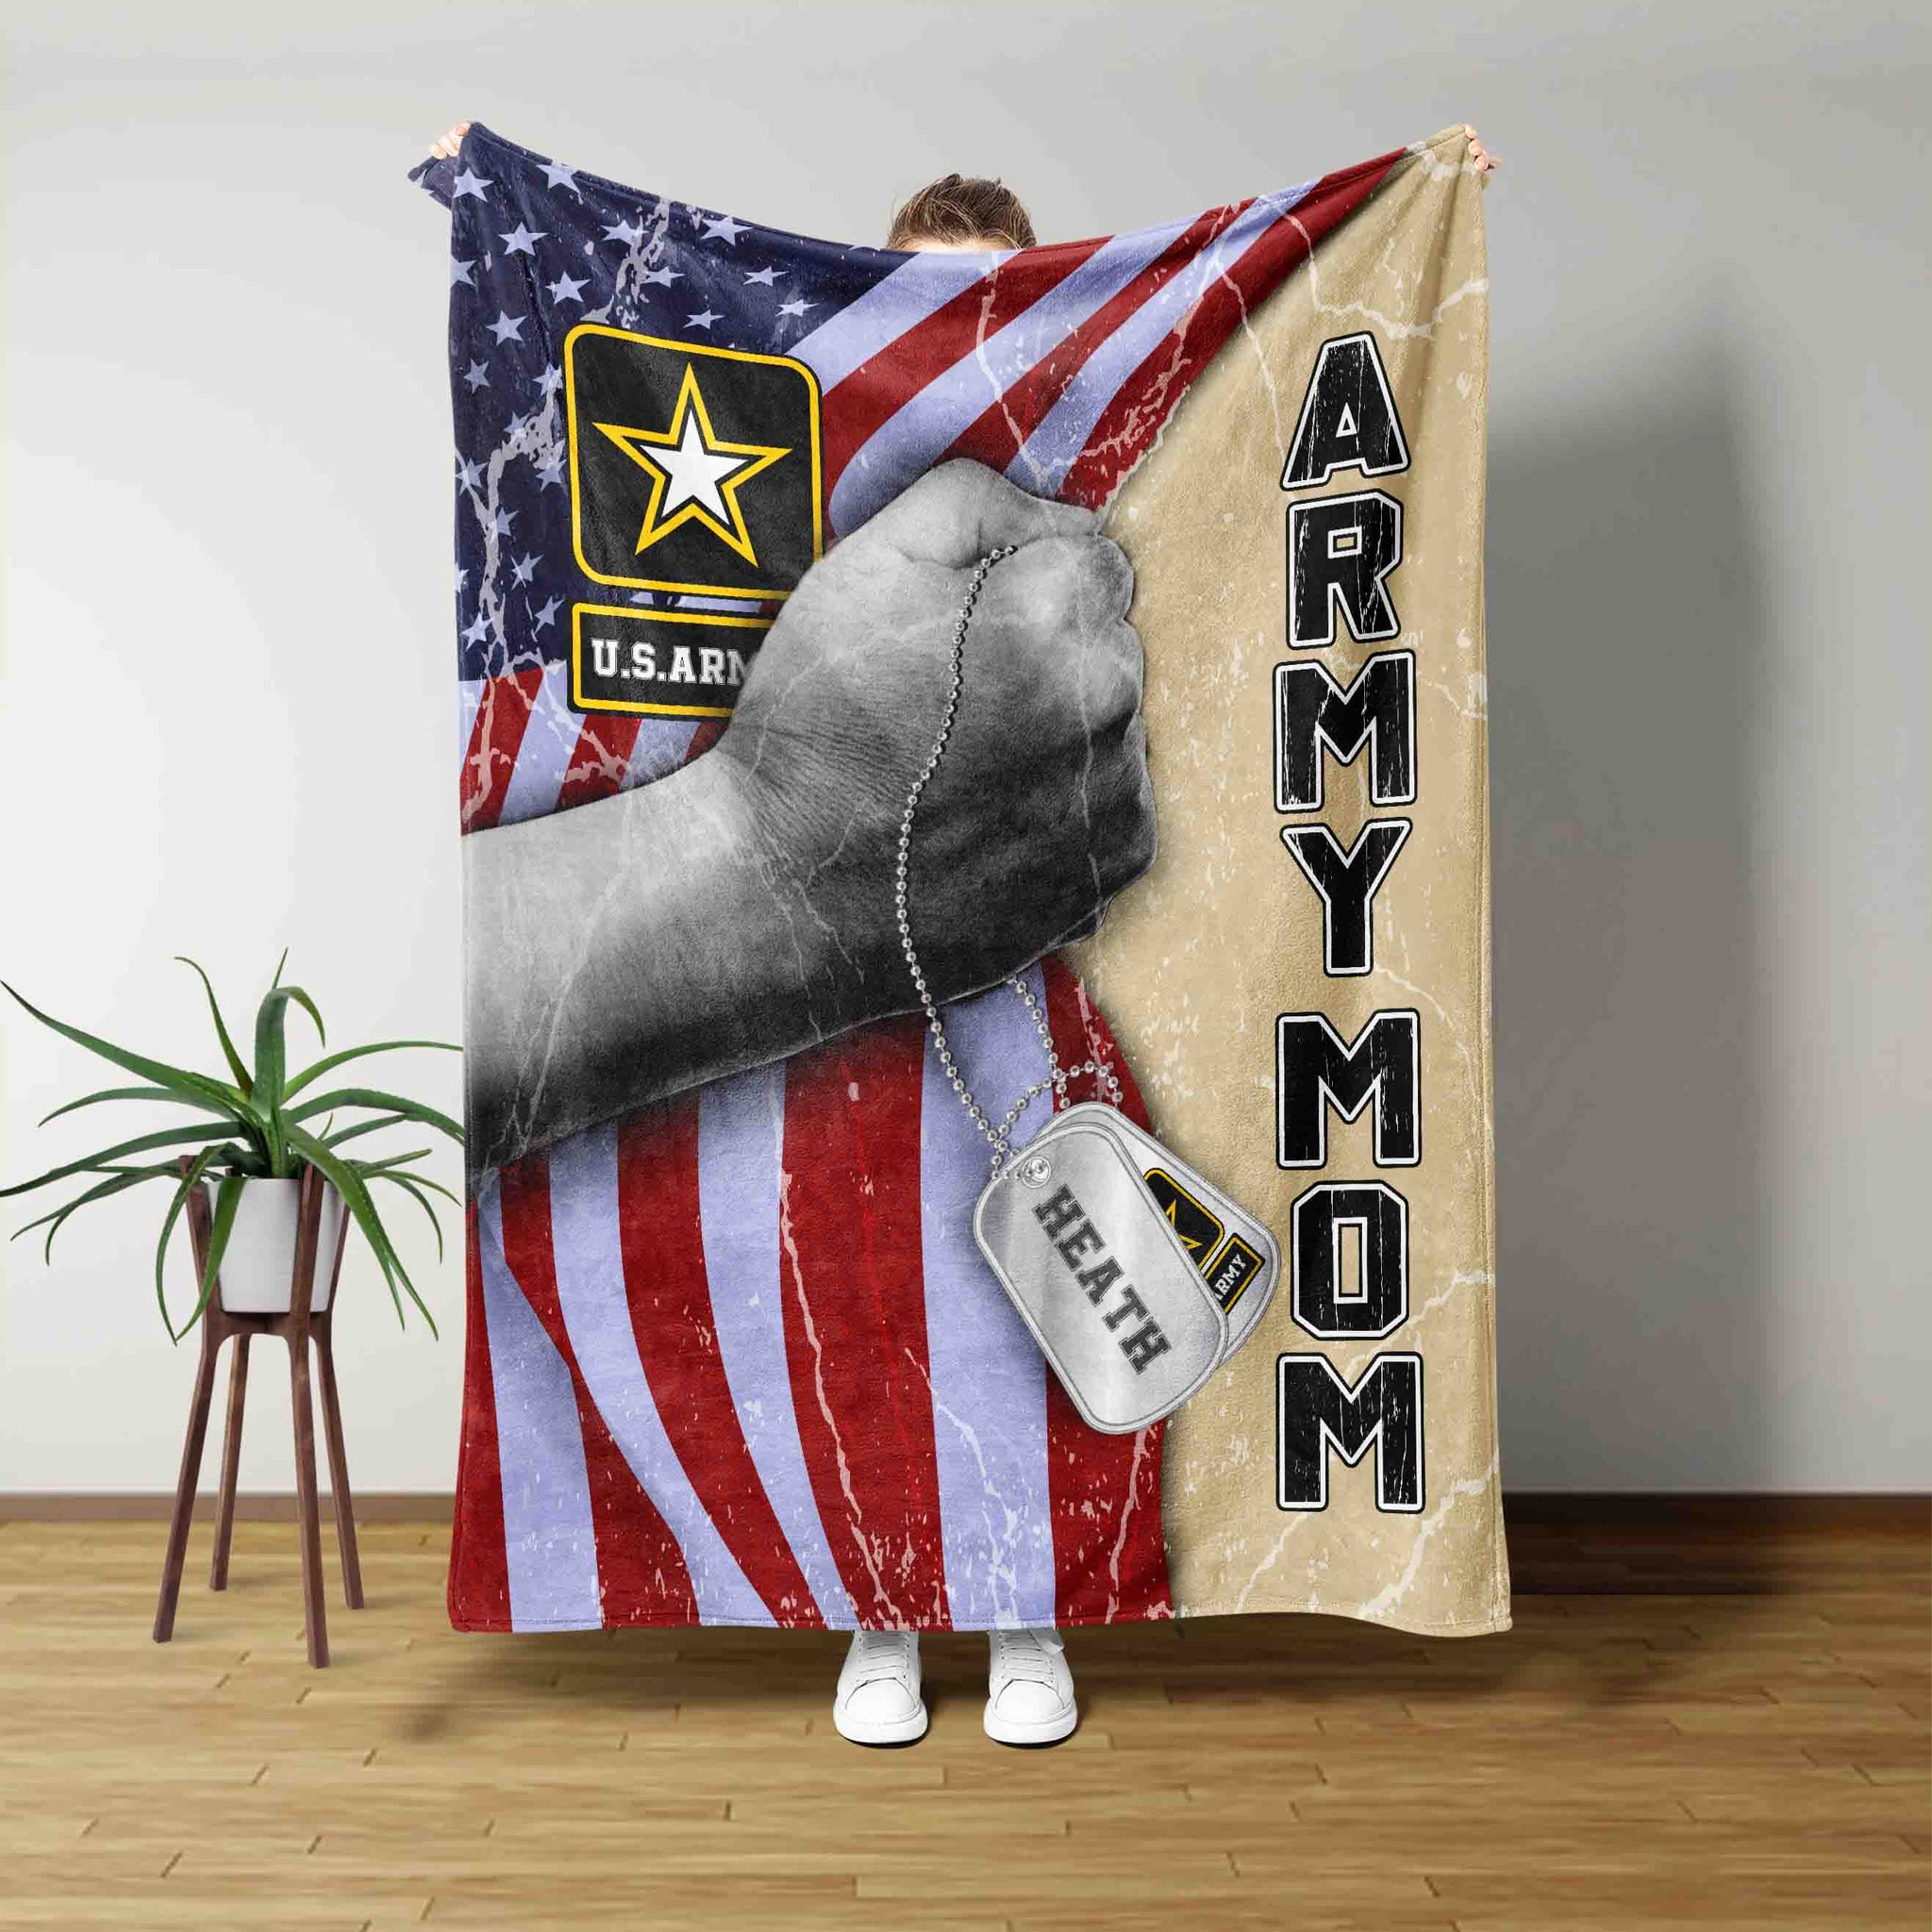 Army Mom Blanket, Veteran Blanket, Mother Blanket, American Flag Blanket, Gift For Military Moms, Mother's Day Blanket, Military Blanket, Army Mom Gift, Custom Name Blanket